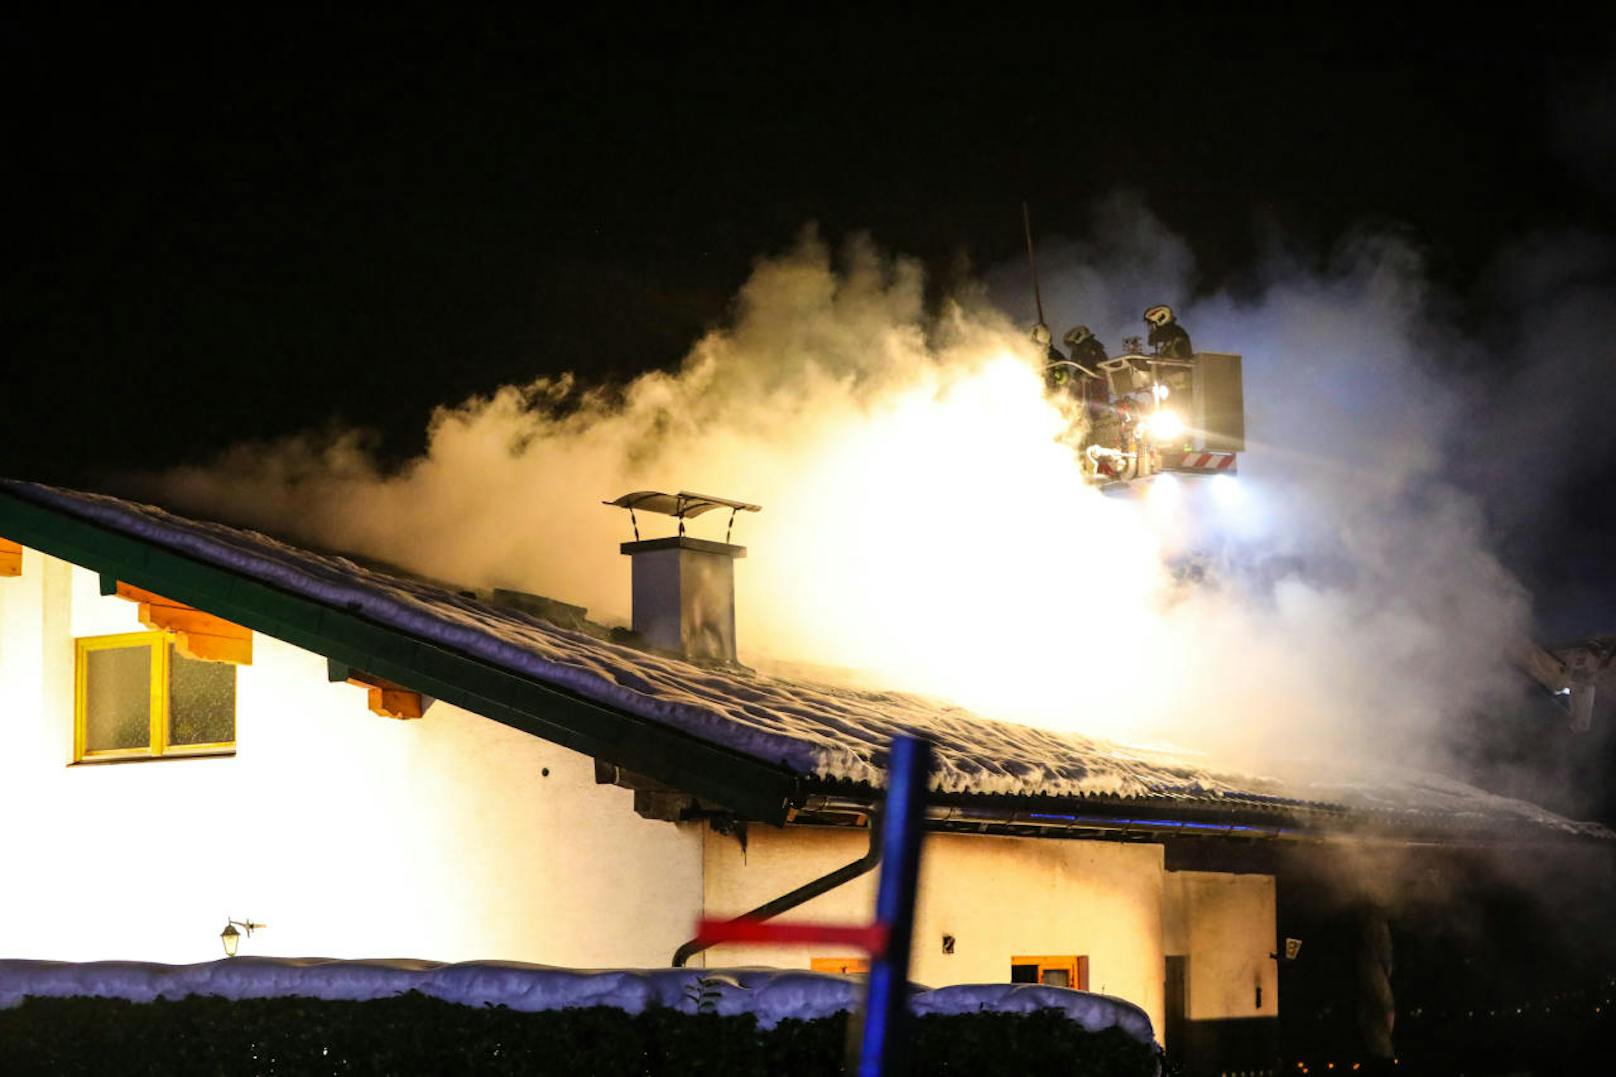 Sonntagabend brannte ein Haus in Altmünster (Bez. Gmunden). Der Christbaum hatte Feuer gefangen. 100 Mann der Feuerwehr waren im Einsatz.